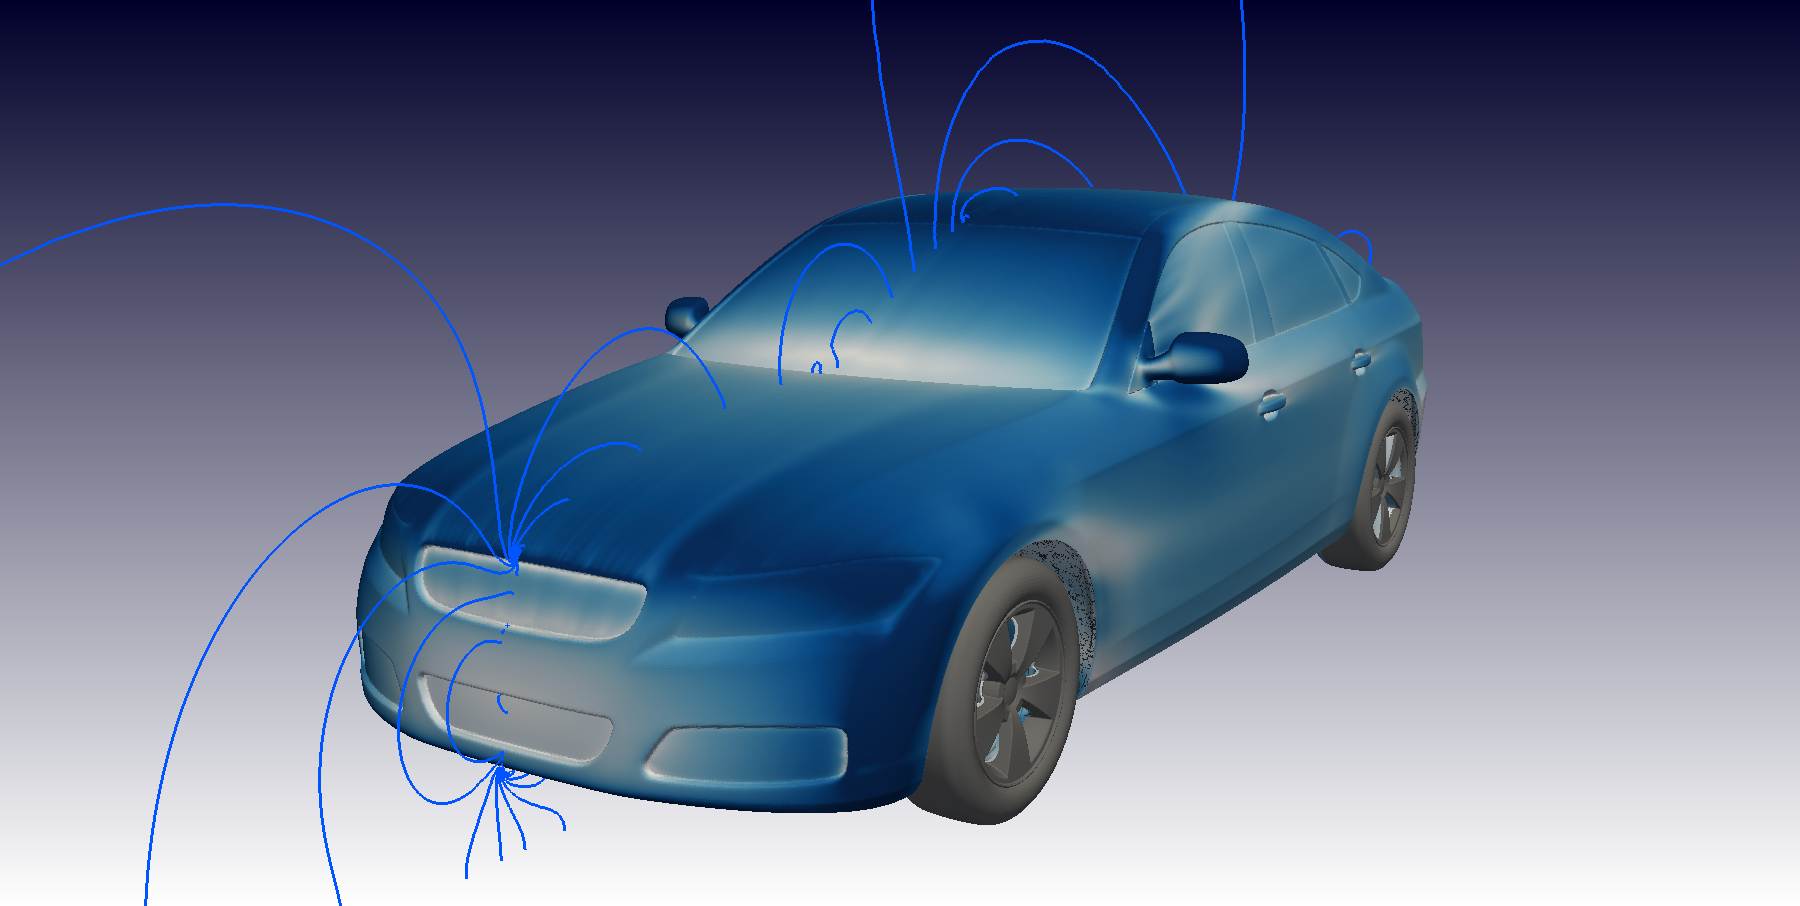 DrivAER model CFD Simulation visualization (OpenFOAM)